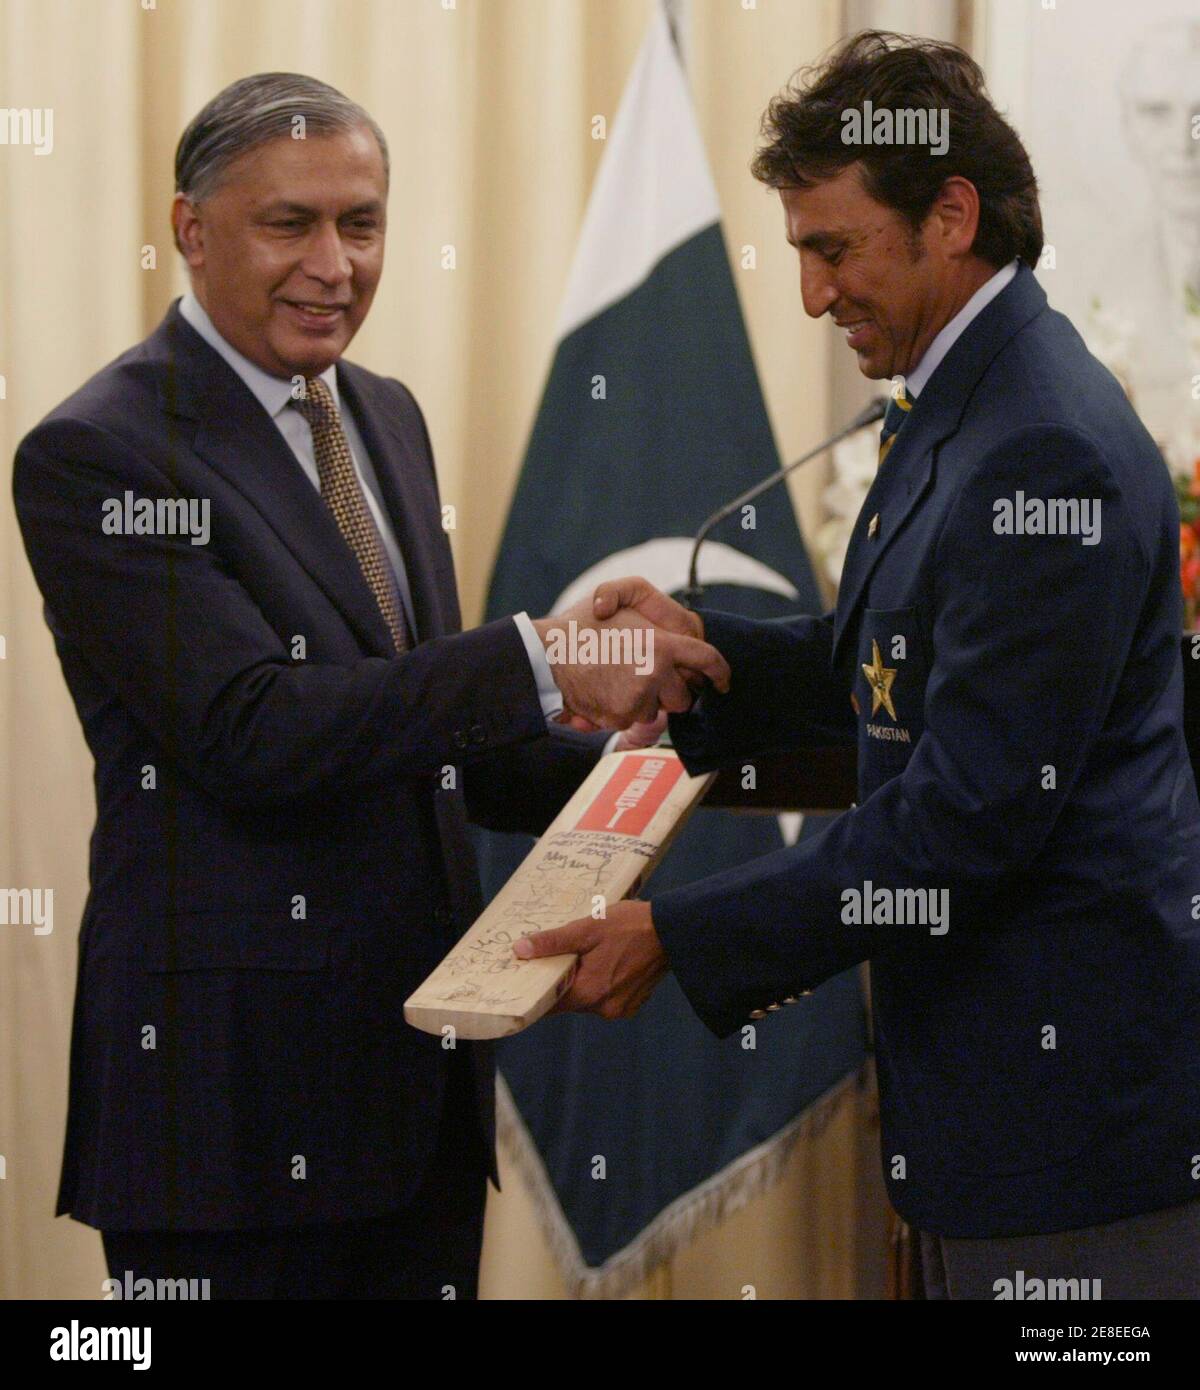 Pakistanischer Cricketspieler Younis Khan (R) verleiht eine Fledermaus mit den Unterschriften von seinen Teamkollegen Pakistans Premierminister Shaukat Aziz im Rahmen eines Empfangs im Premierminister House in Islamabad 2. Dezember 2006.  REUTERS/Faisal Mahmood (PAKISTAN) Stockfoto